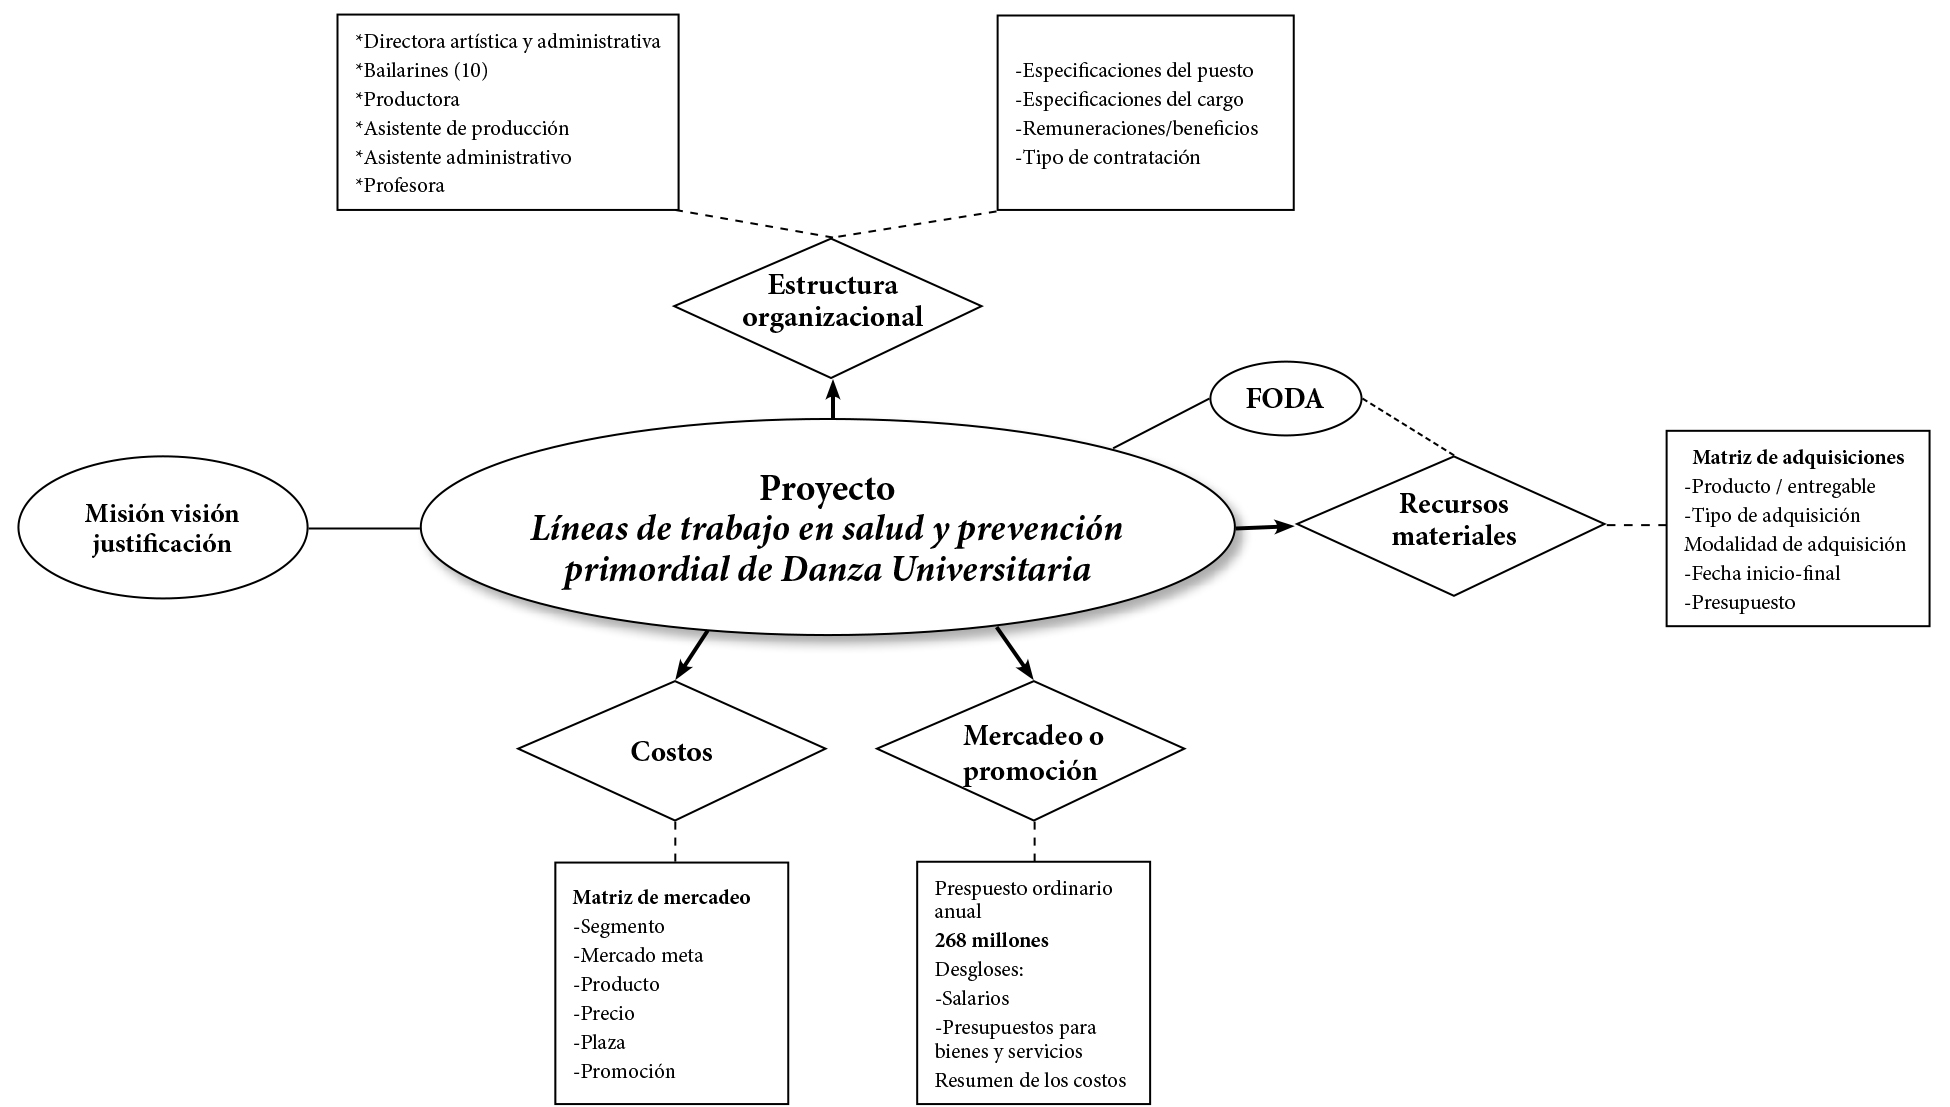 Flujograma. Proceso de análisis organizacional y administrativo del proyecto Líneas de trabajo en salud y prevención primordial de Danza Universitaria